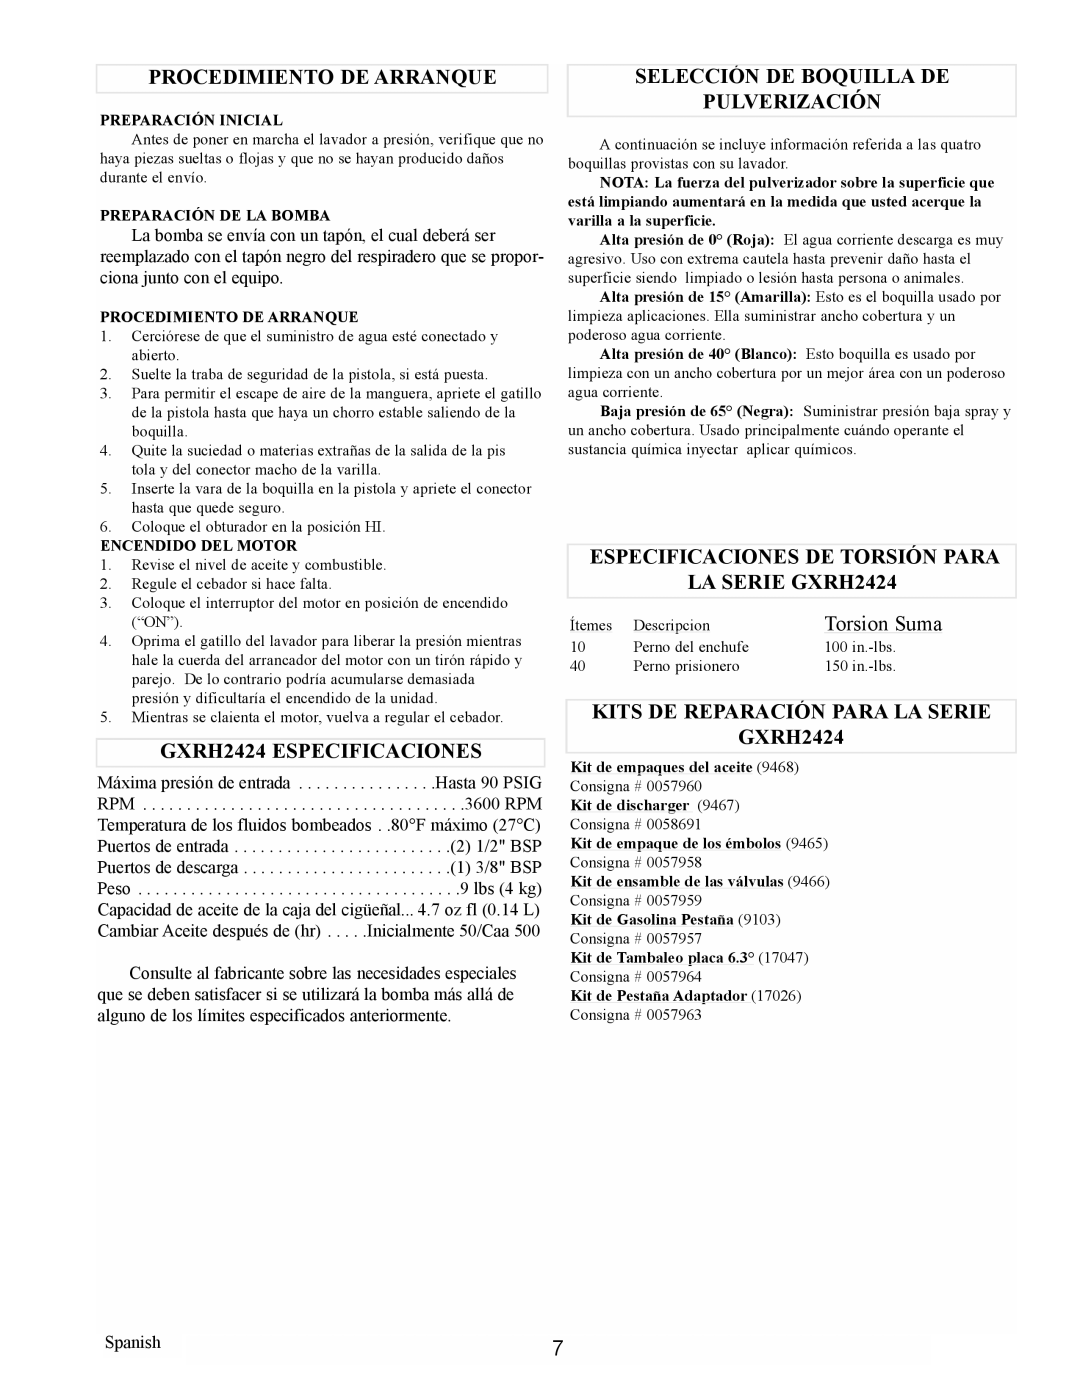 Coleman PW0912400.02 manual Procedimiento De Arranque, GXRH2424 ESPECIFICACIONES, Selección De Boquilla De Pulverización 